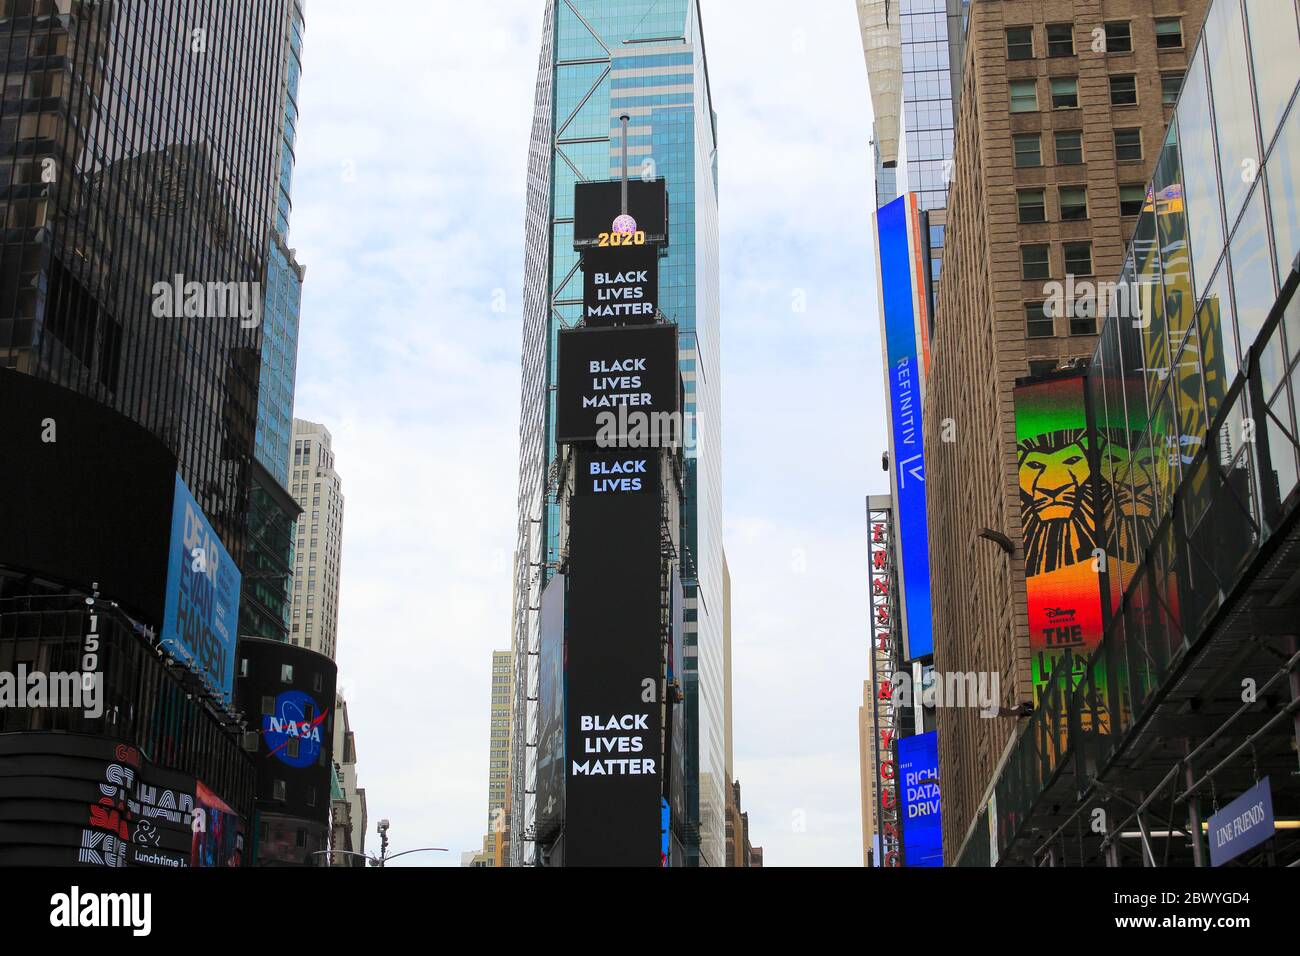 Schwarze Leben Materie Plakatwand im Times Square. Der Tod von George Floyd, während in der Obhut der Minneapolis-Polizei hat landesweite Proteste rund um die Vereinigten Staaten gefordert Gerechtigkeit und sozialen Wandel. 1 Times Square, Manhattan, New York City, USA. Juni 2020 Stockfoto